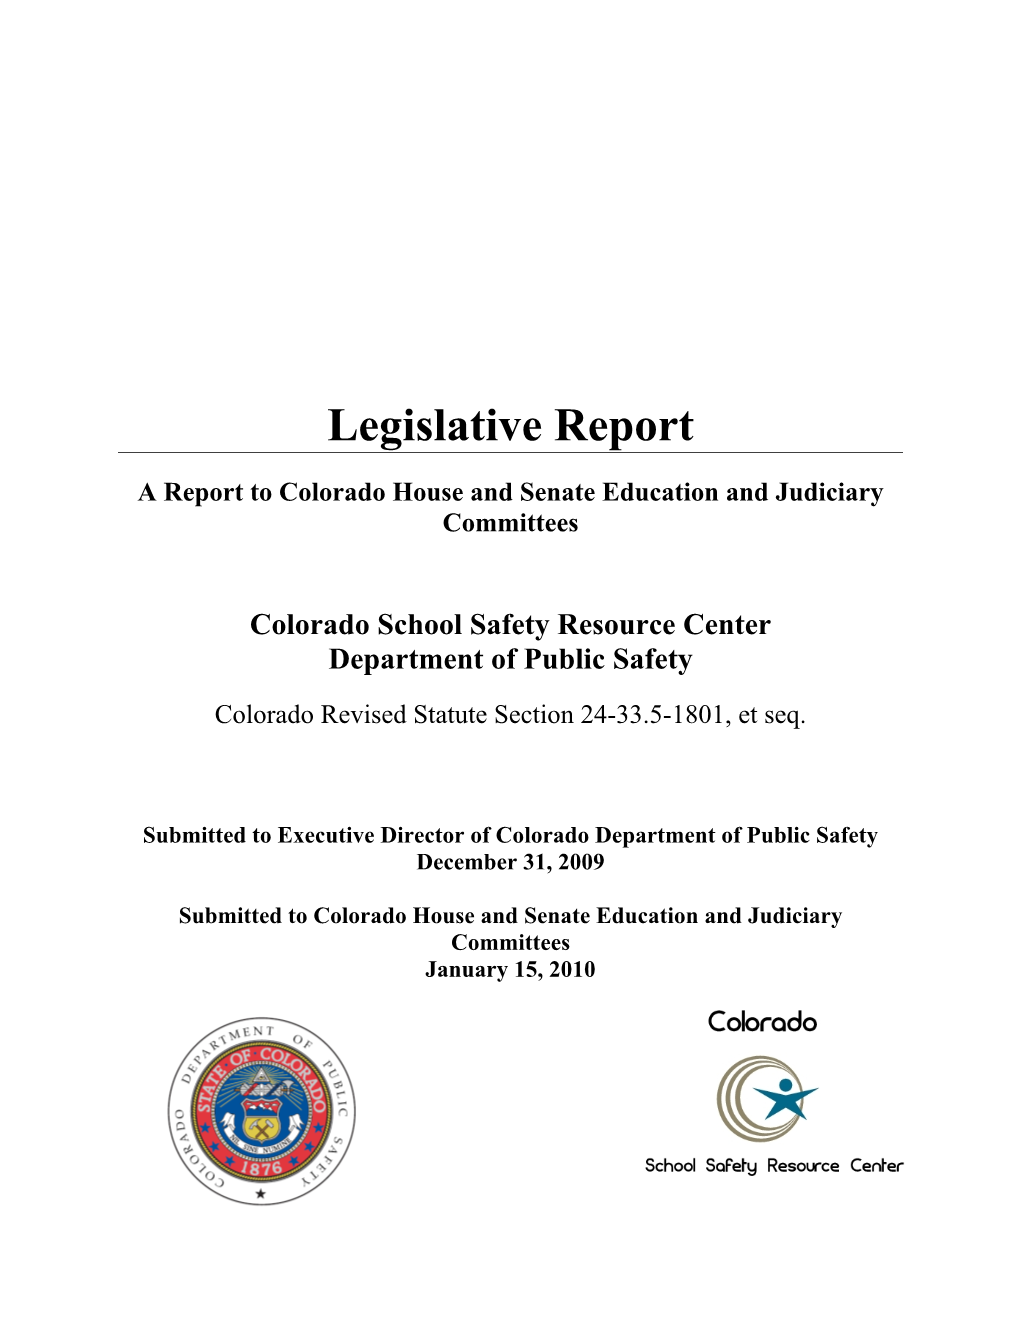 2009 Legislative Report